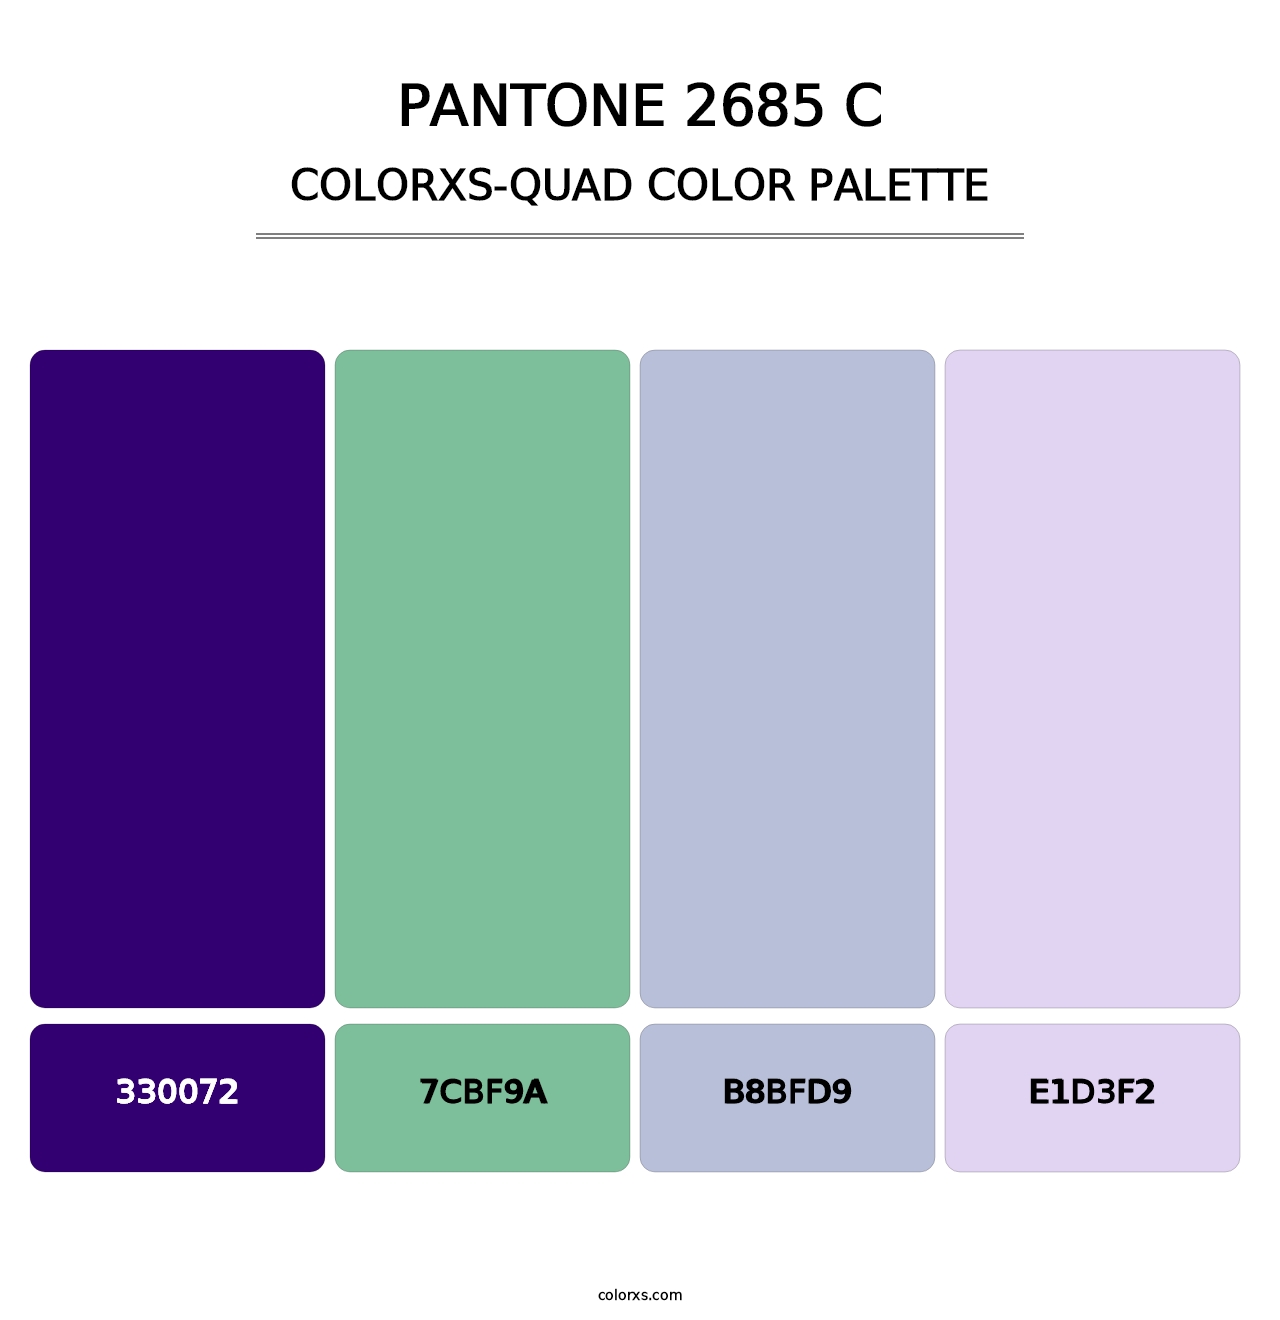 PANTONE 2685 C - Colorxs Quad Palette